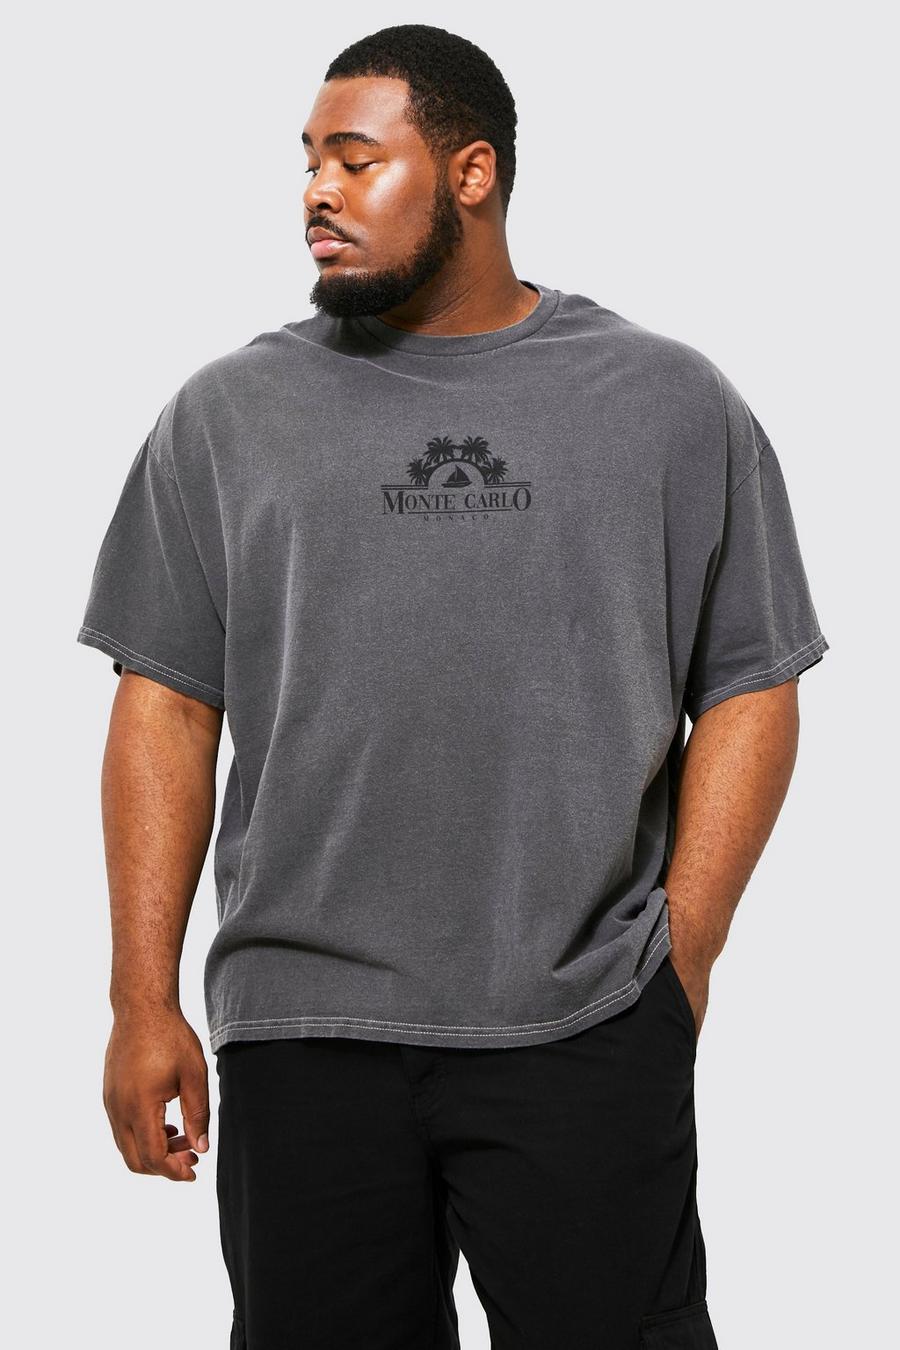 Charcoal grau Plus Overdye Monte Carlo Print T-shirt